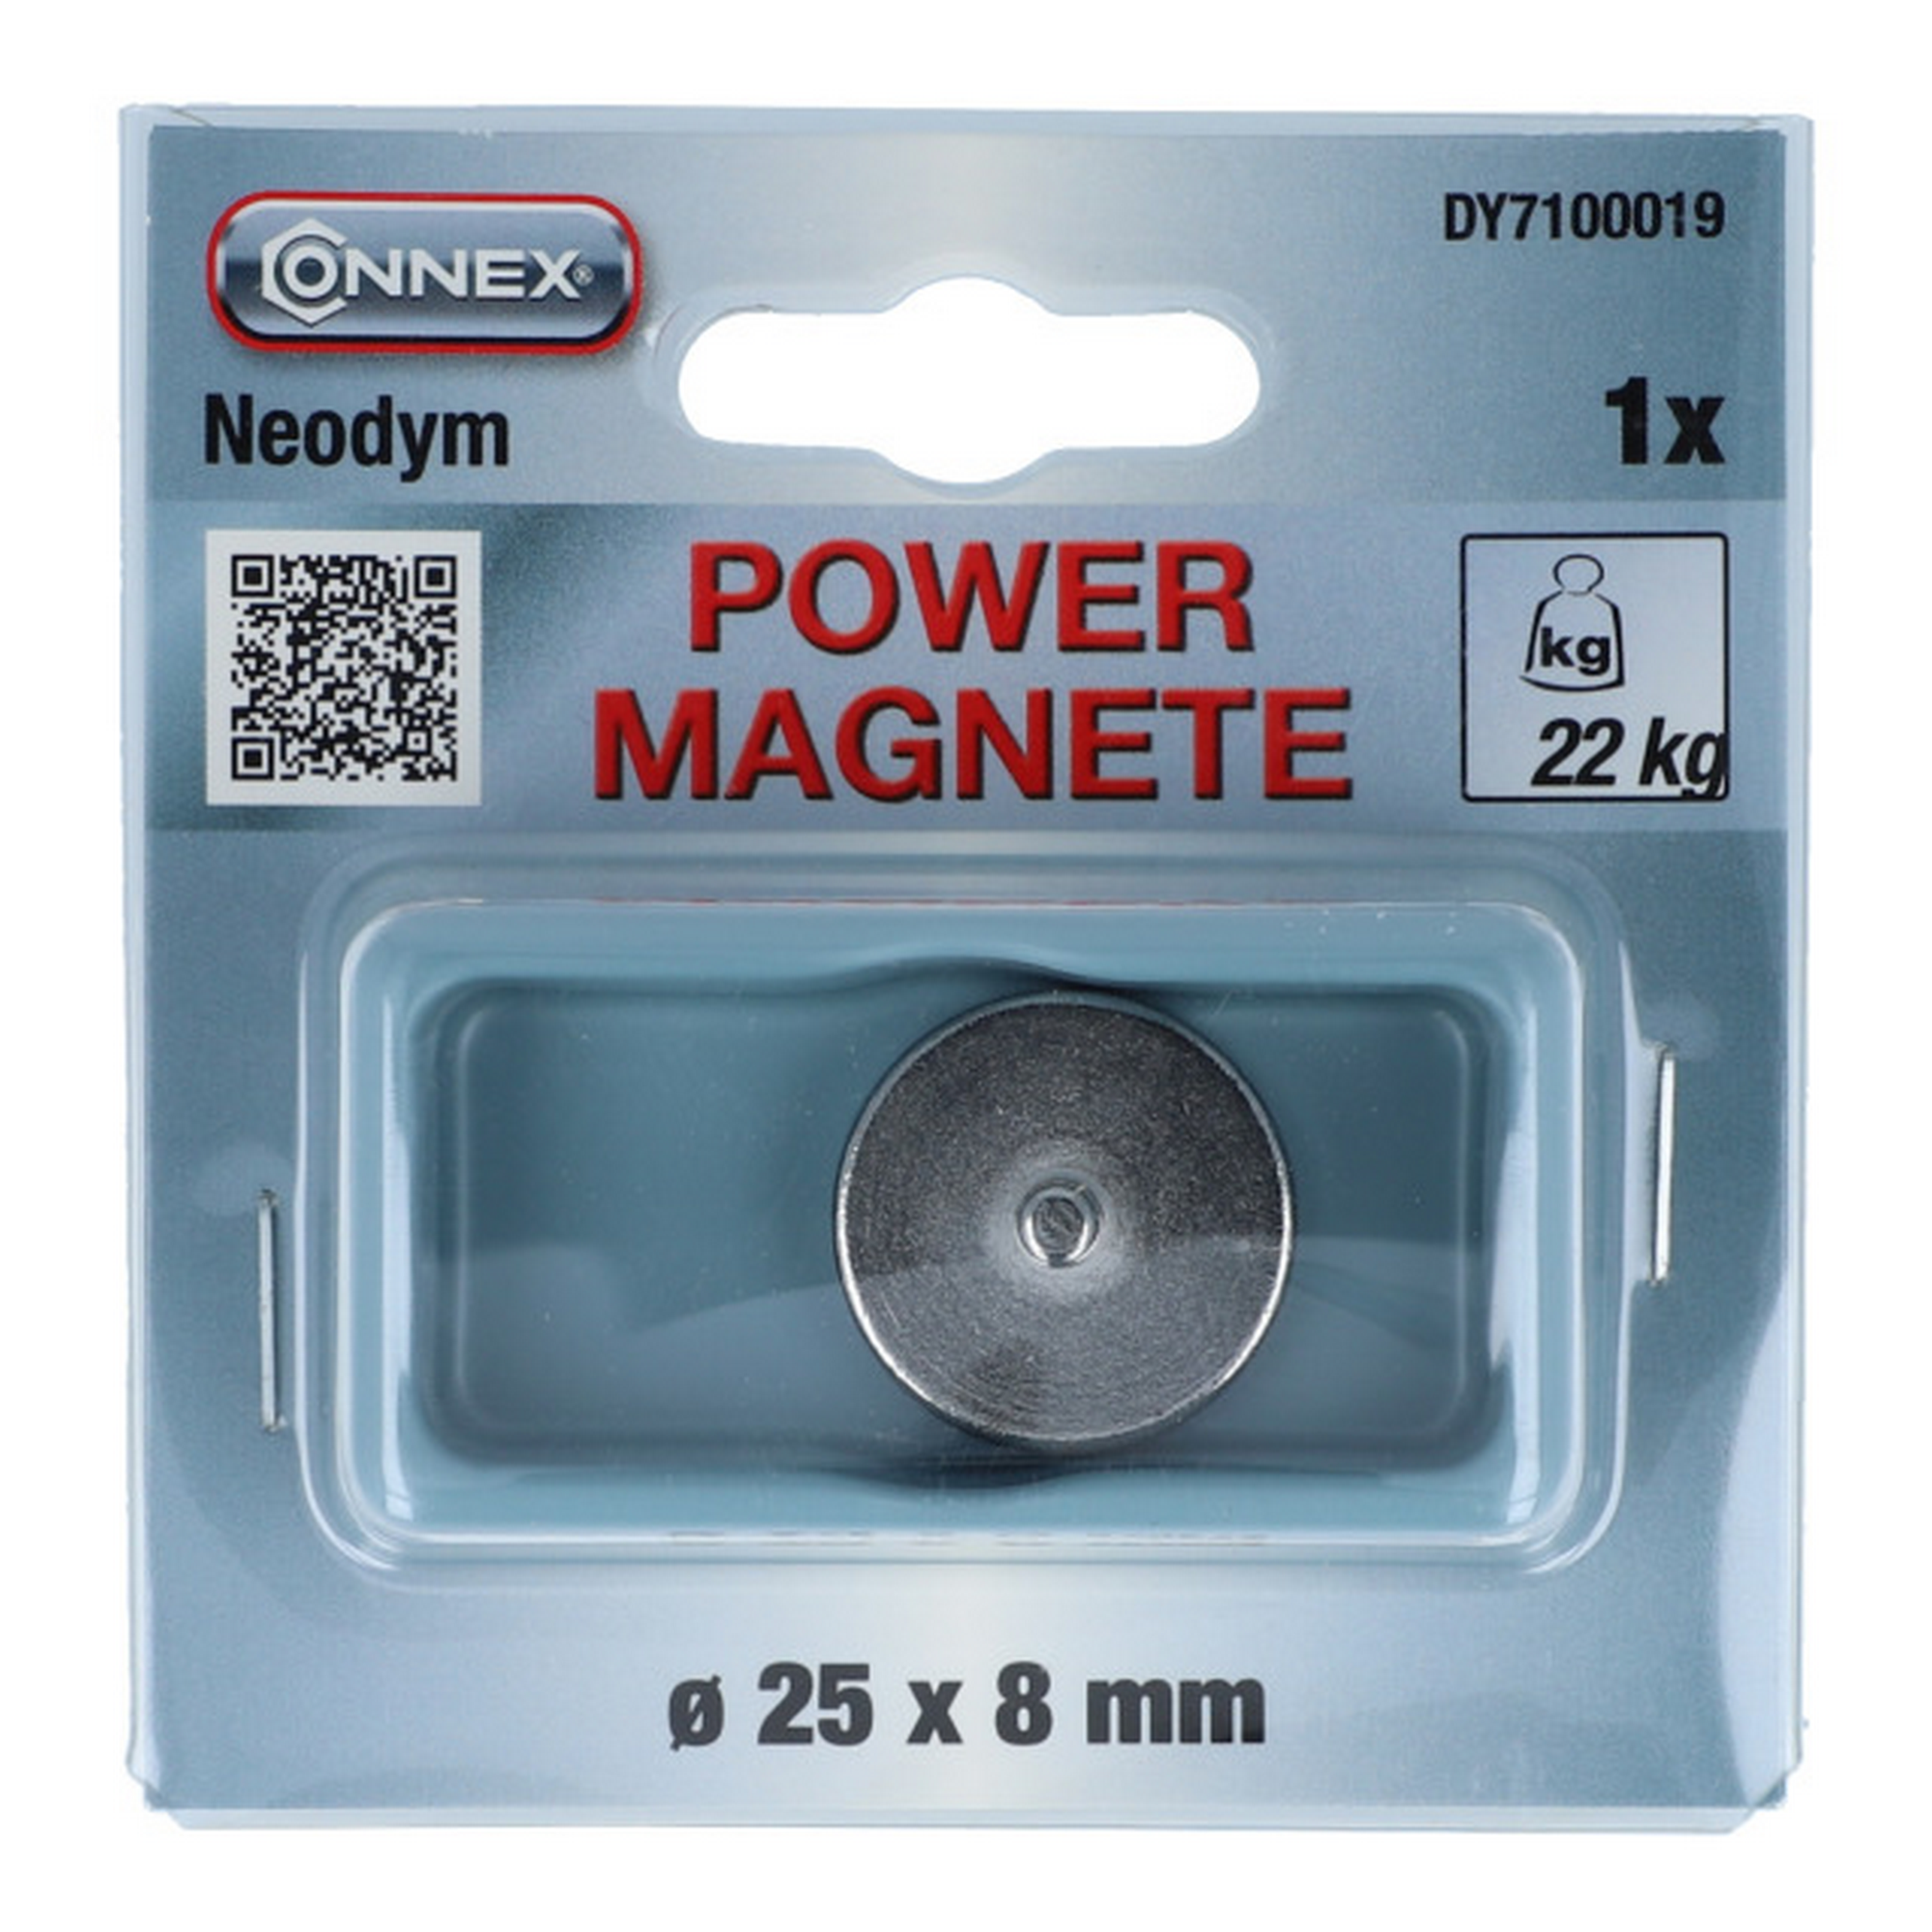 Magnet mit Gewindezapfen Ø 25 x 8 mm 22 kg + product picture